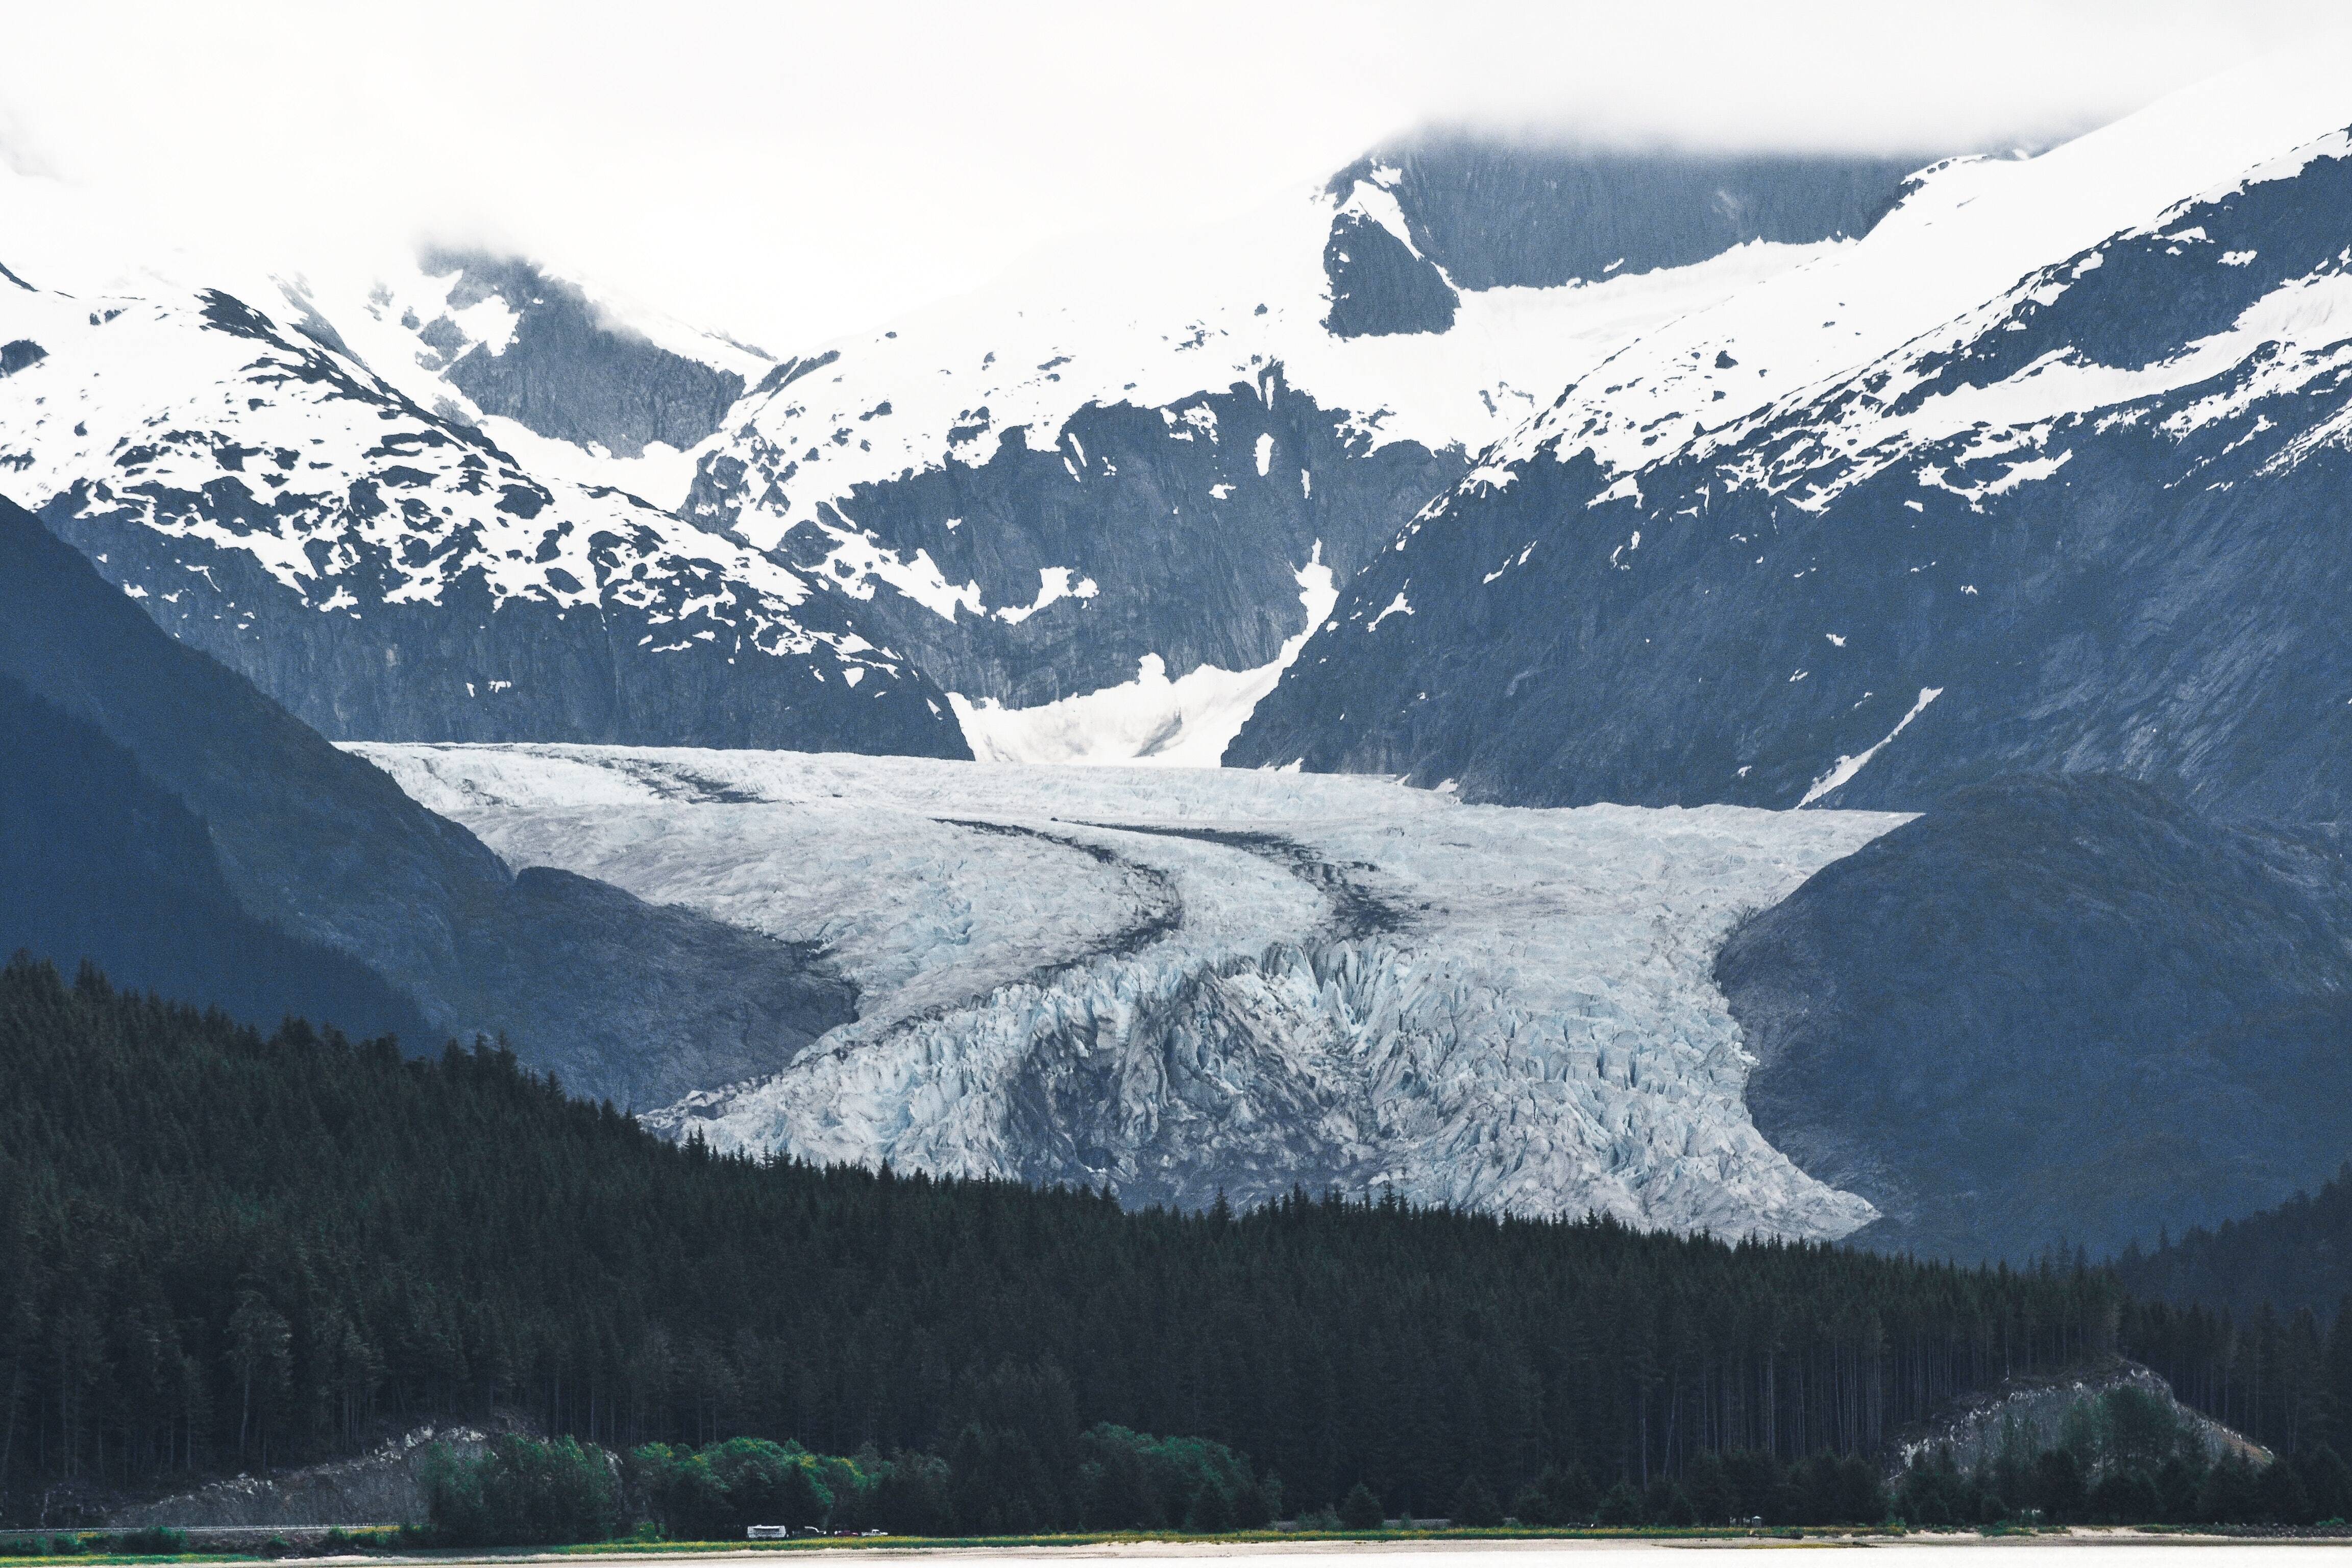 O Alasca é um dos 50 estados dos Estados Unidos, mas faz fronteira apenas com o Canadá. Foto: Pexels